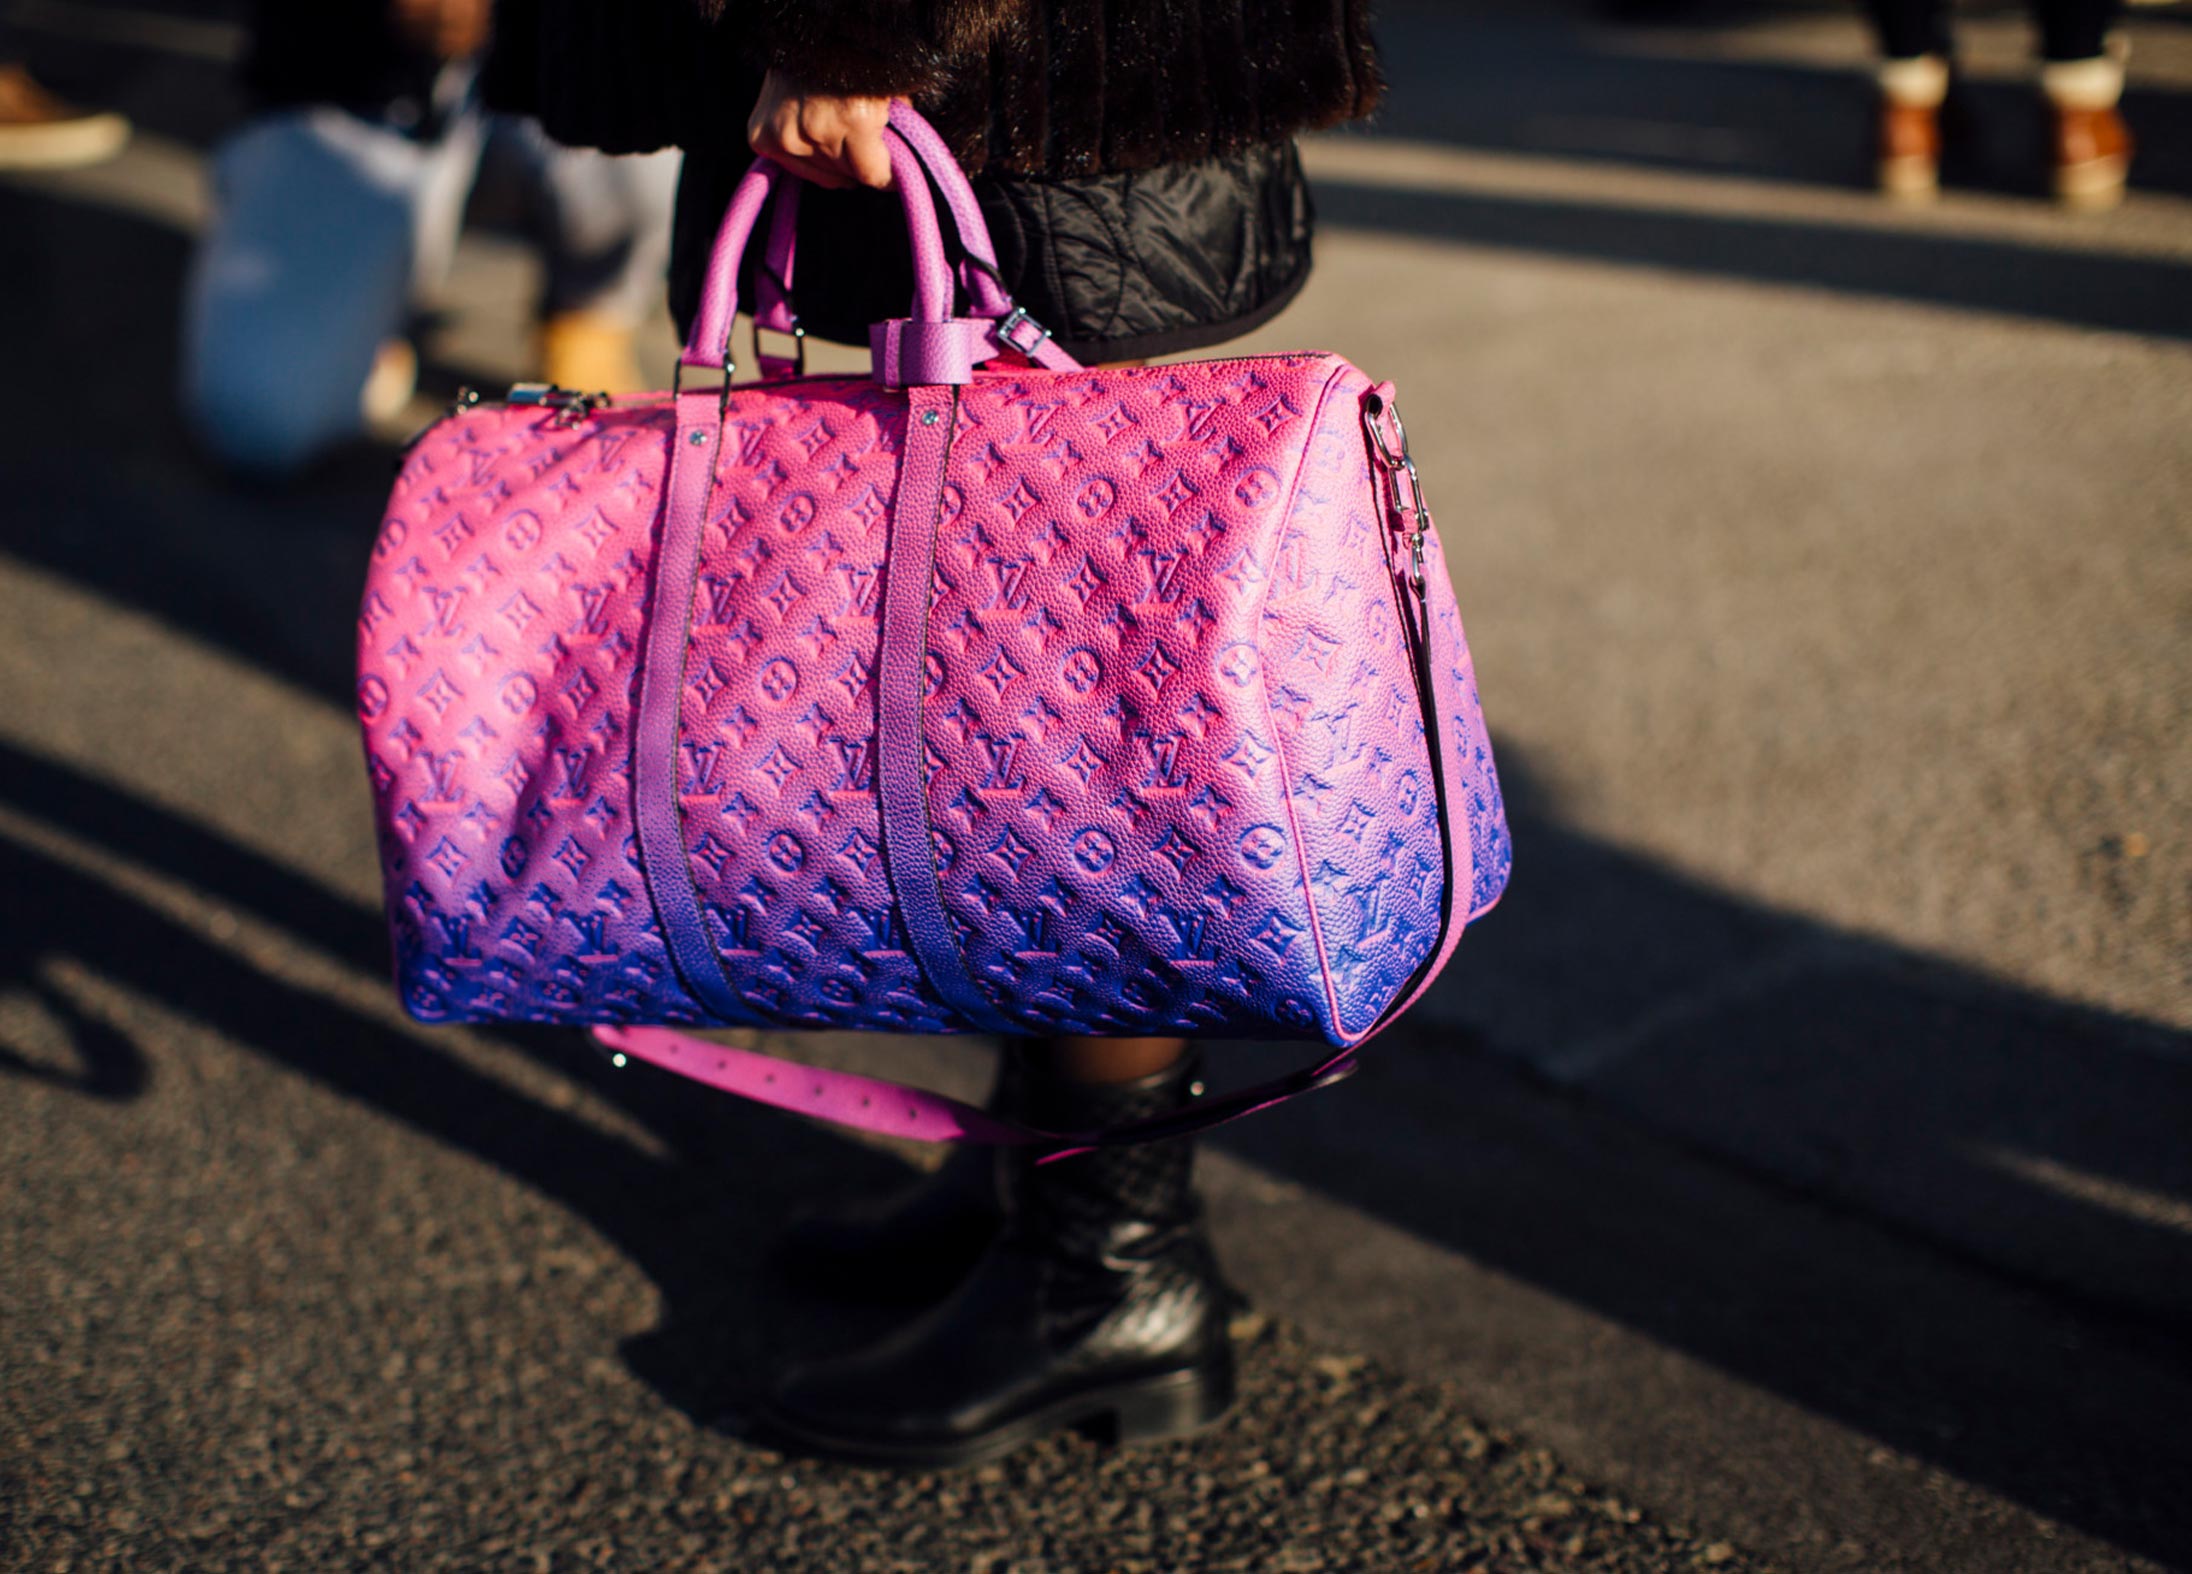 Louis Vuitton’s Keepall handbag